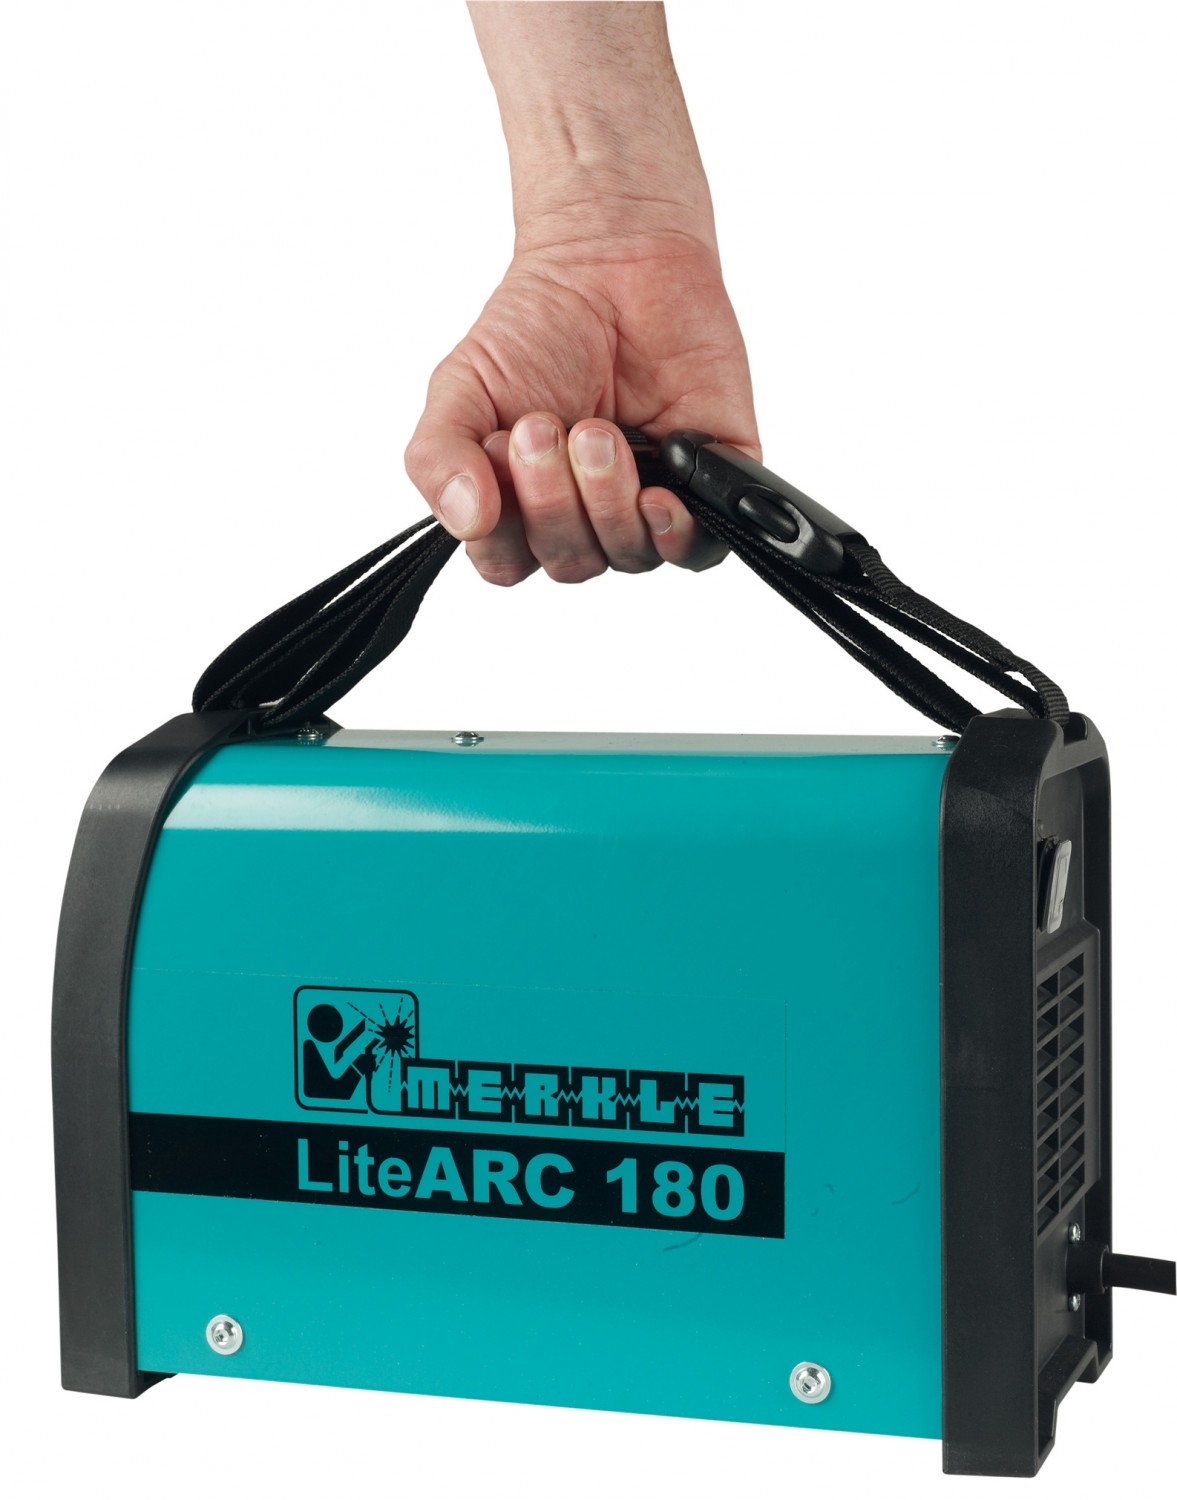 Schweißgeräte Merkle LiteARC 180 im Test, Bild 3